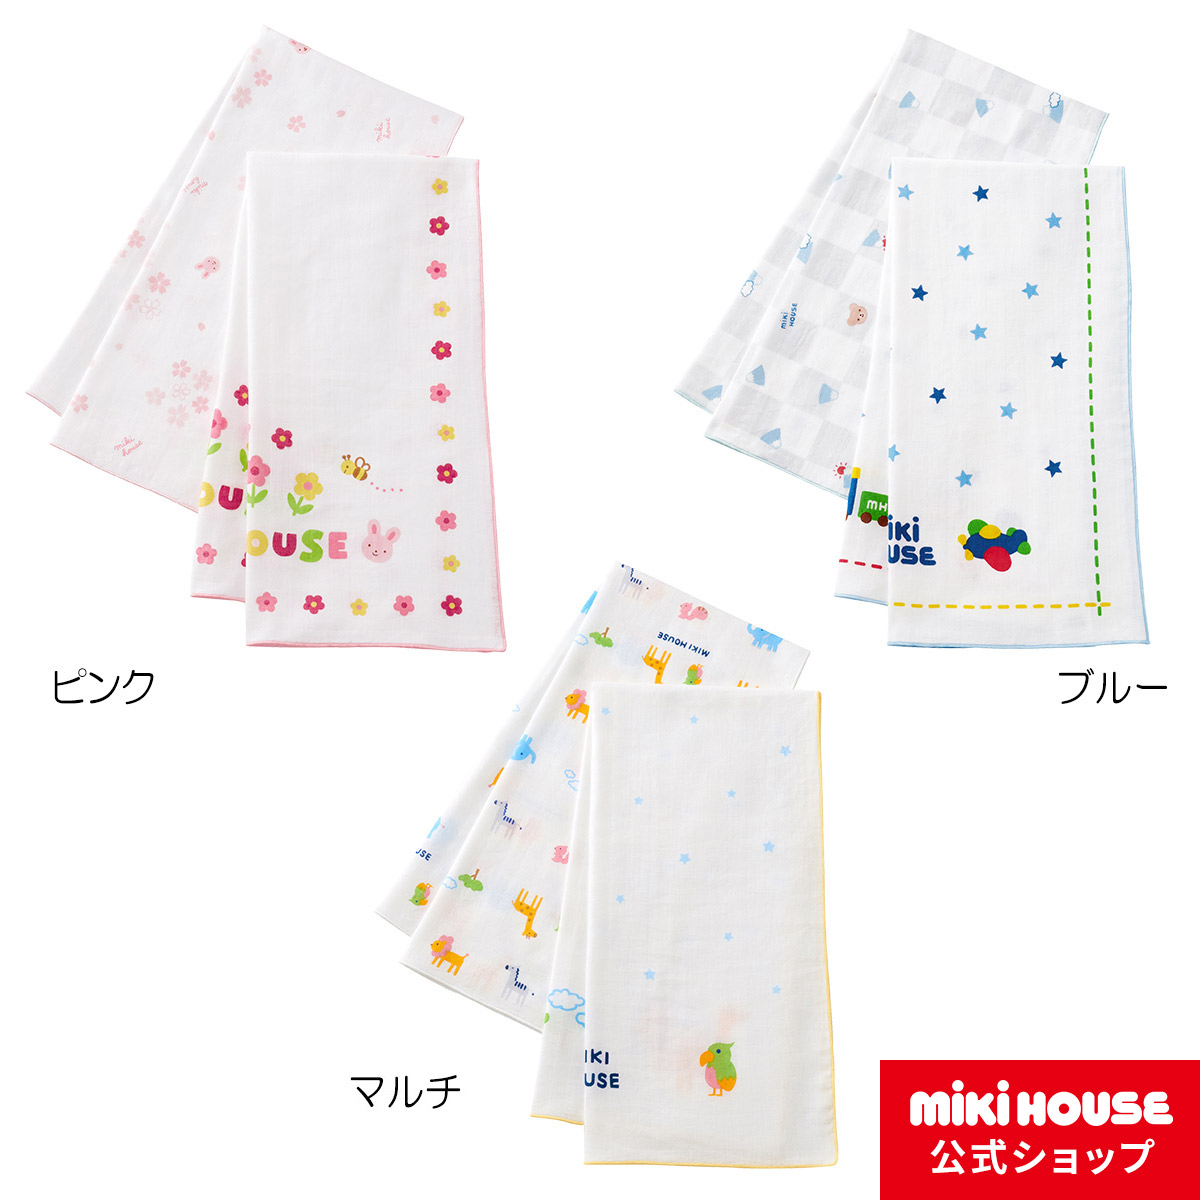 ミキハウス mikihouse ガーゼタオルセット ベビー用品 ベビー 赤ちゃん 日本製 ギフト お祝い プレゼント | ミキハウス公式楽天ショップ